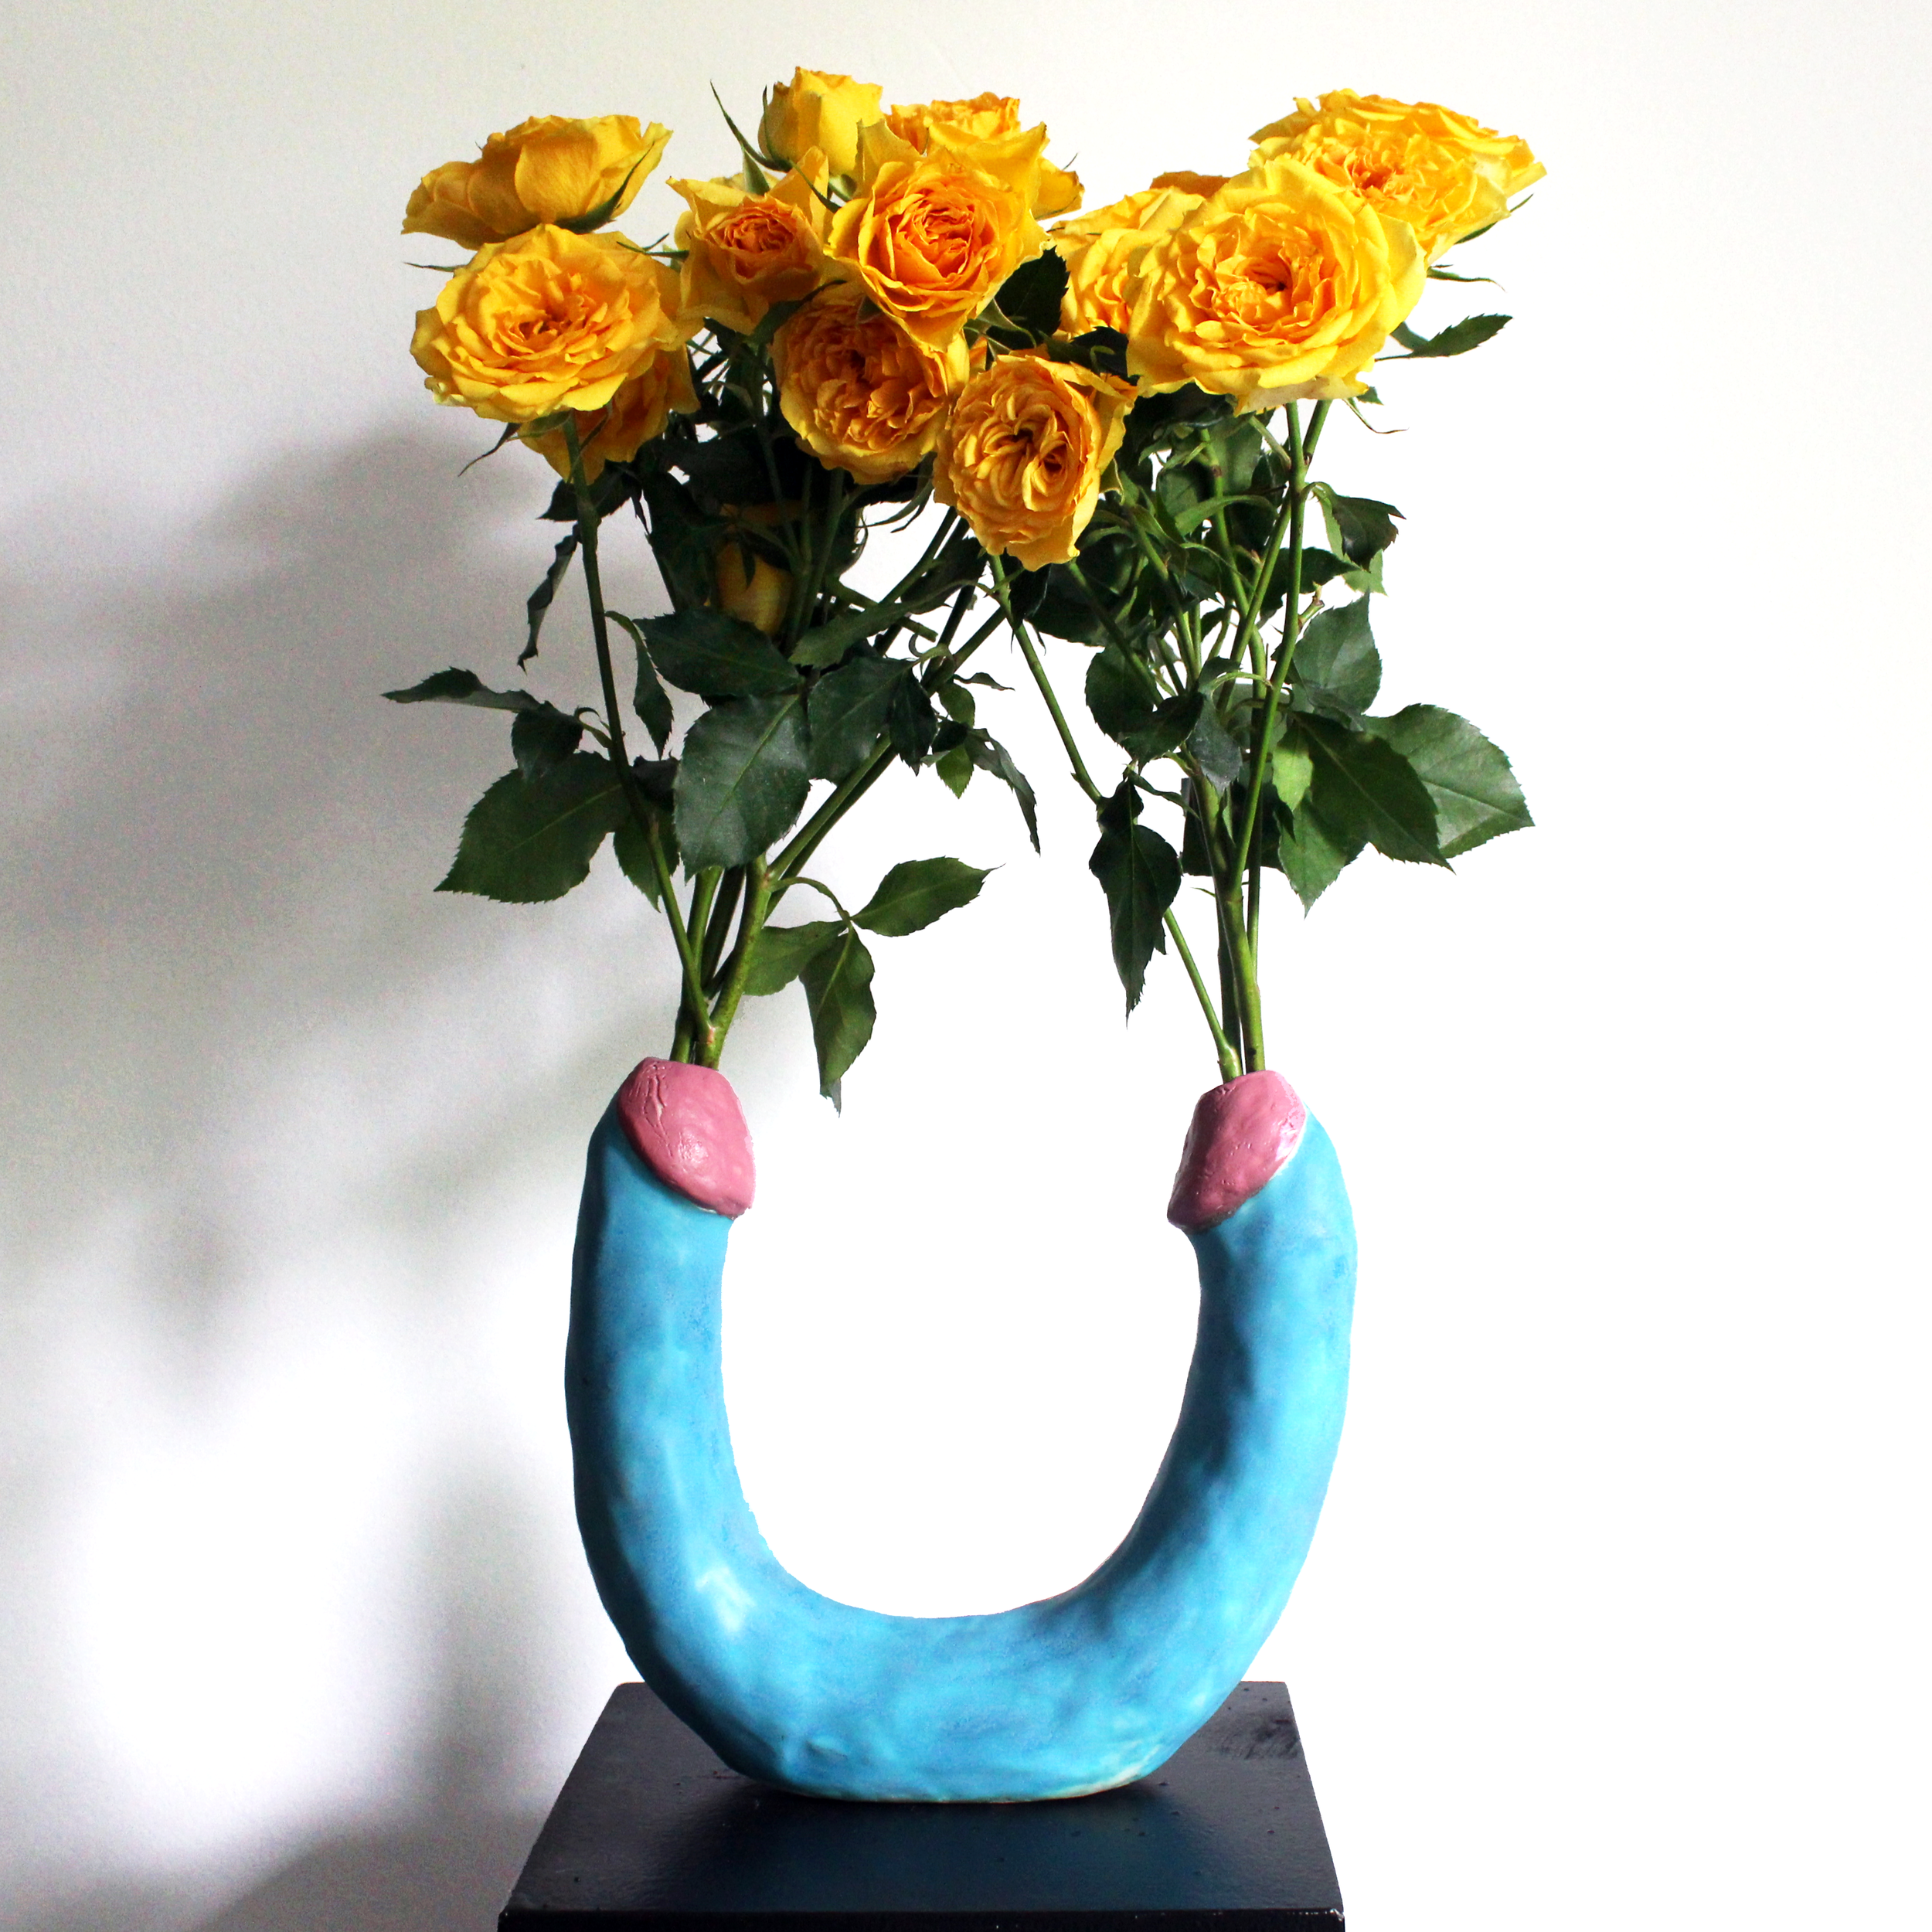 Double-Ended Dildo Vase